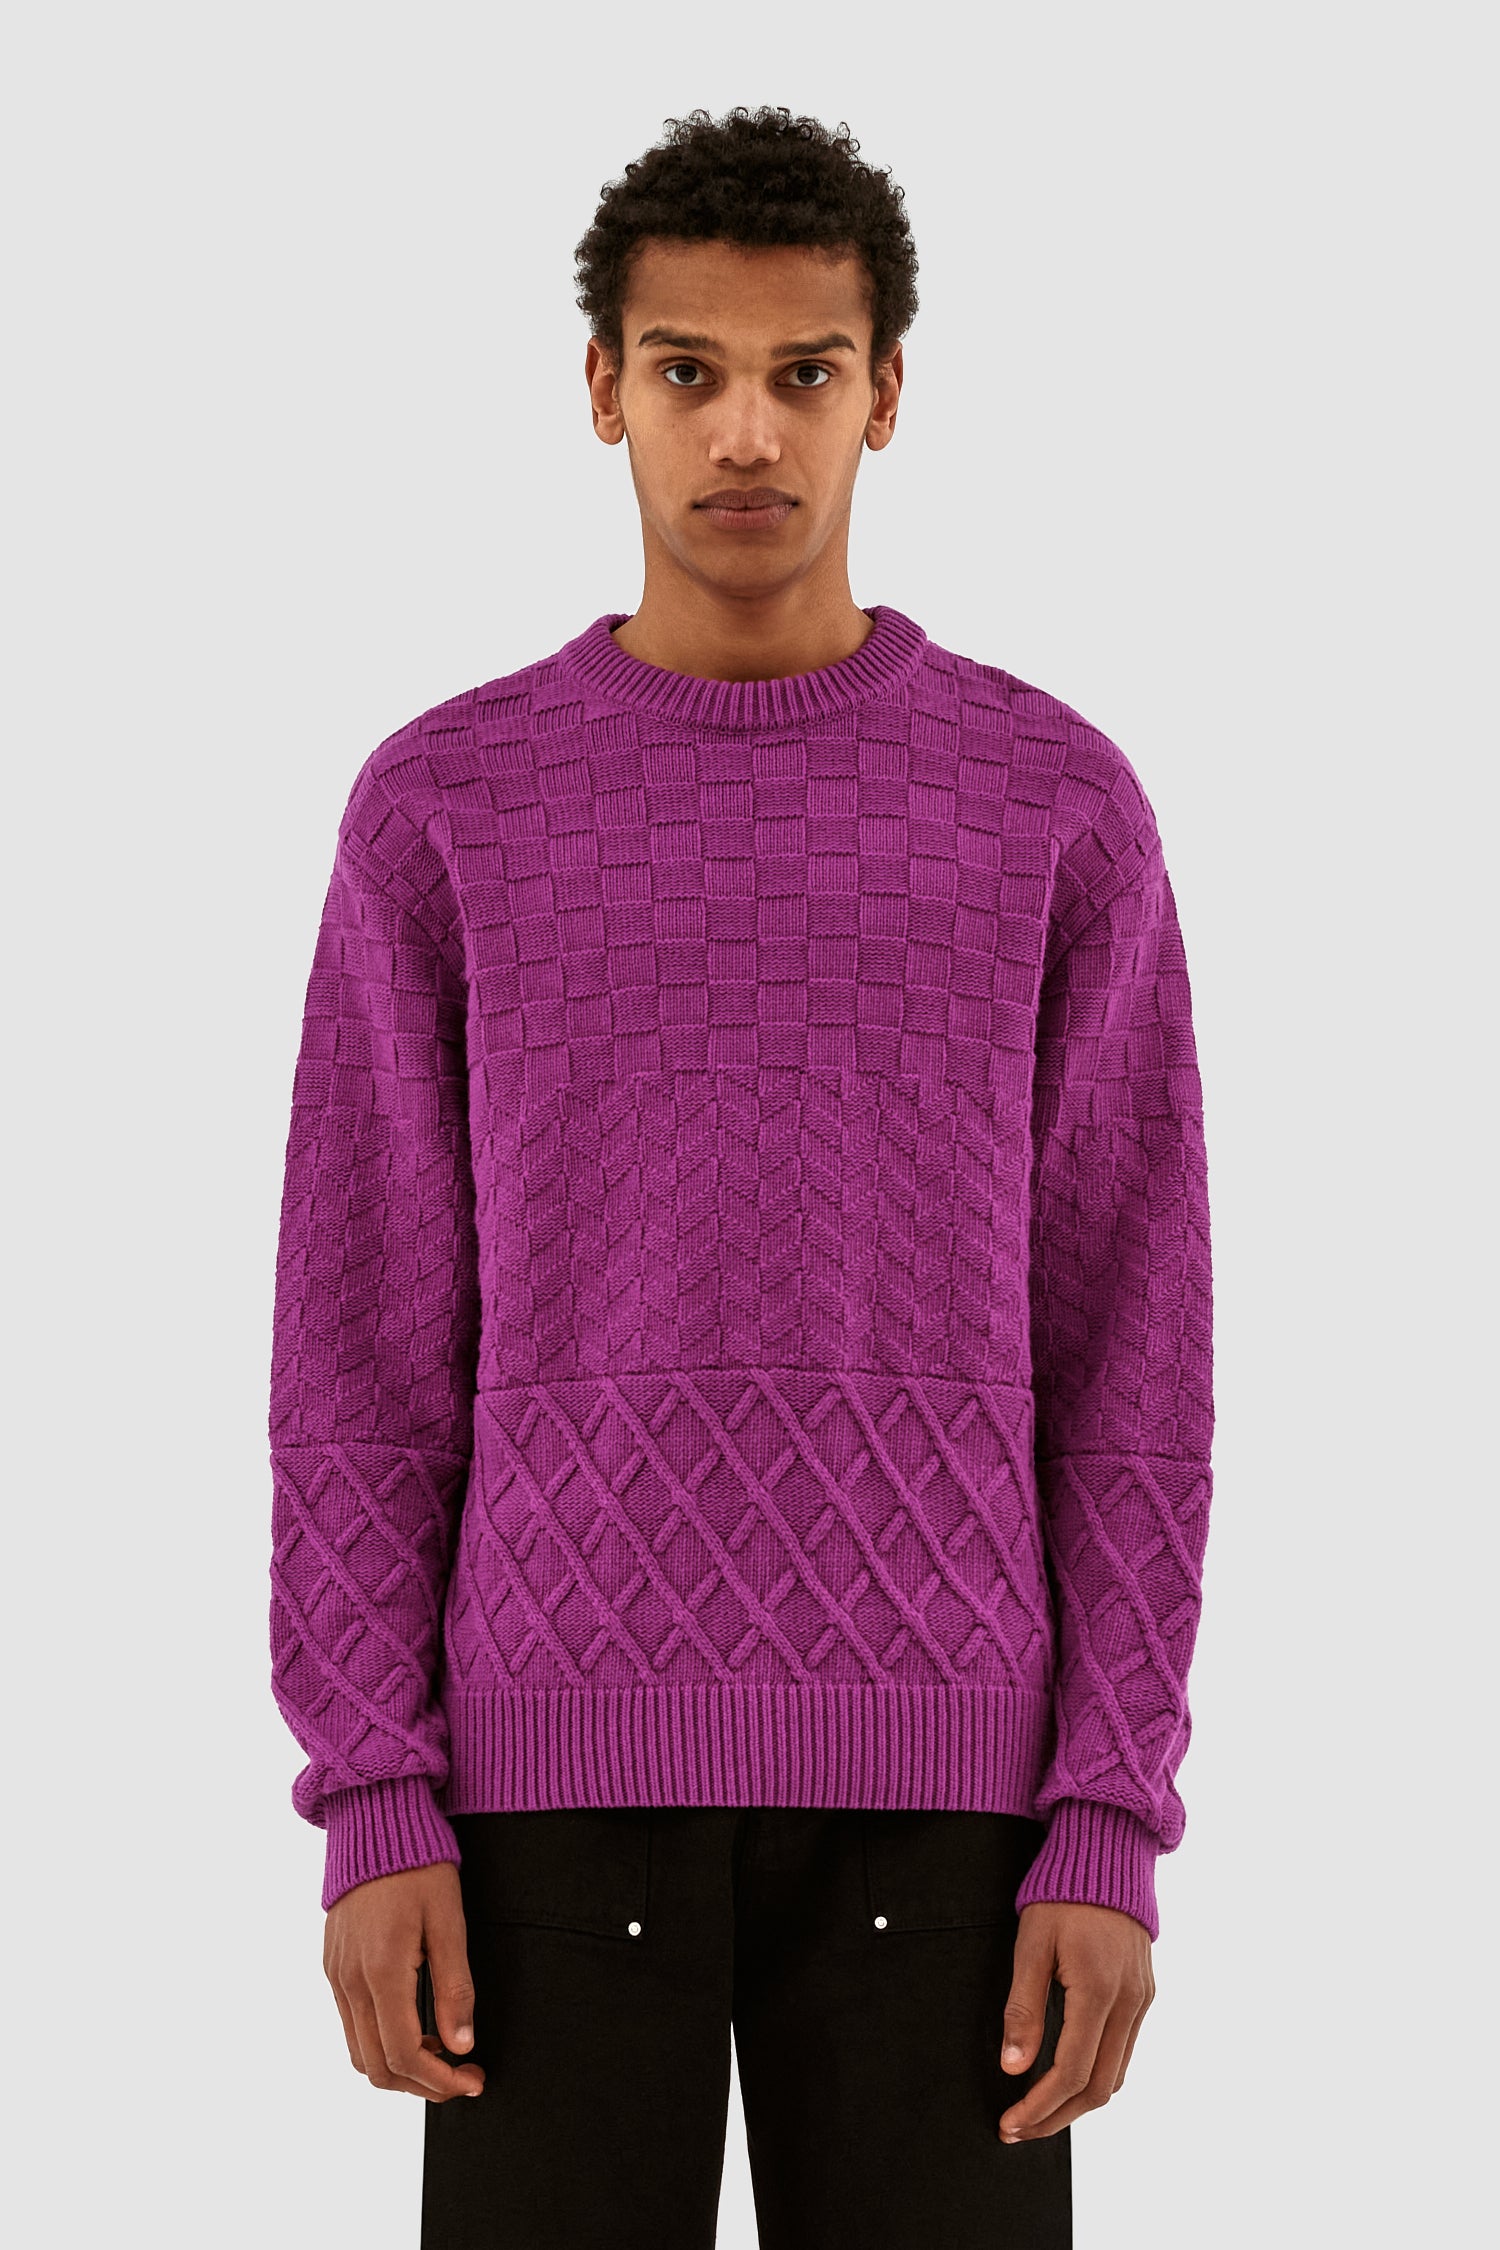 Kurt Sweater - Pink